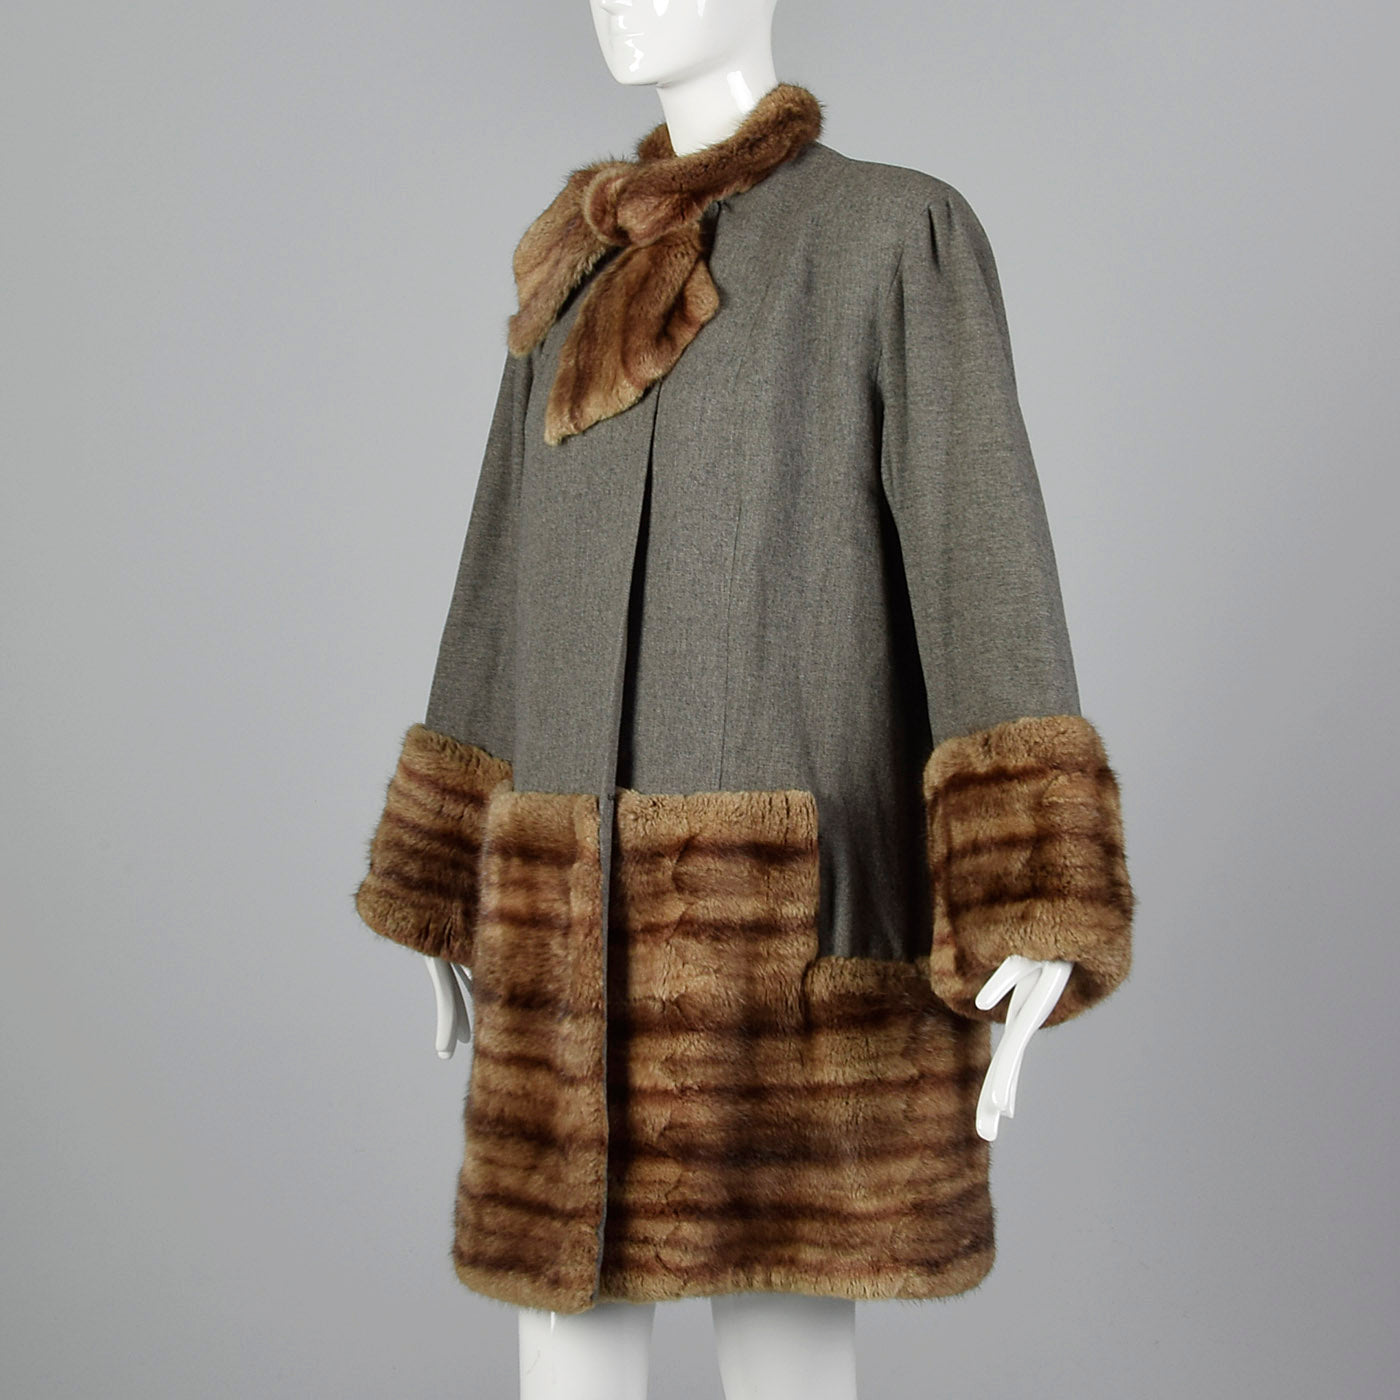 1940s Gray Wool Swing Coat with Beaver Fur Trim